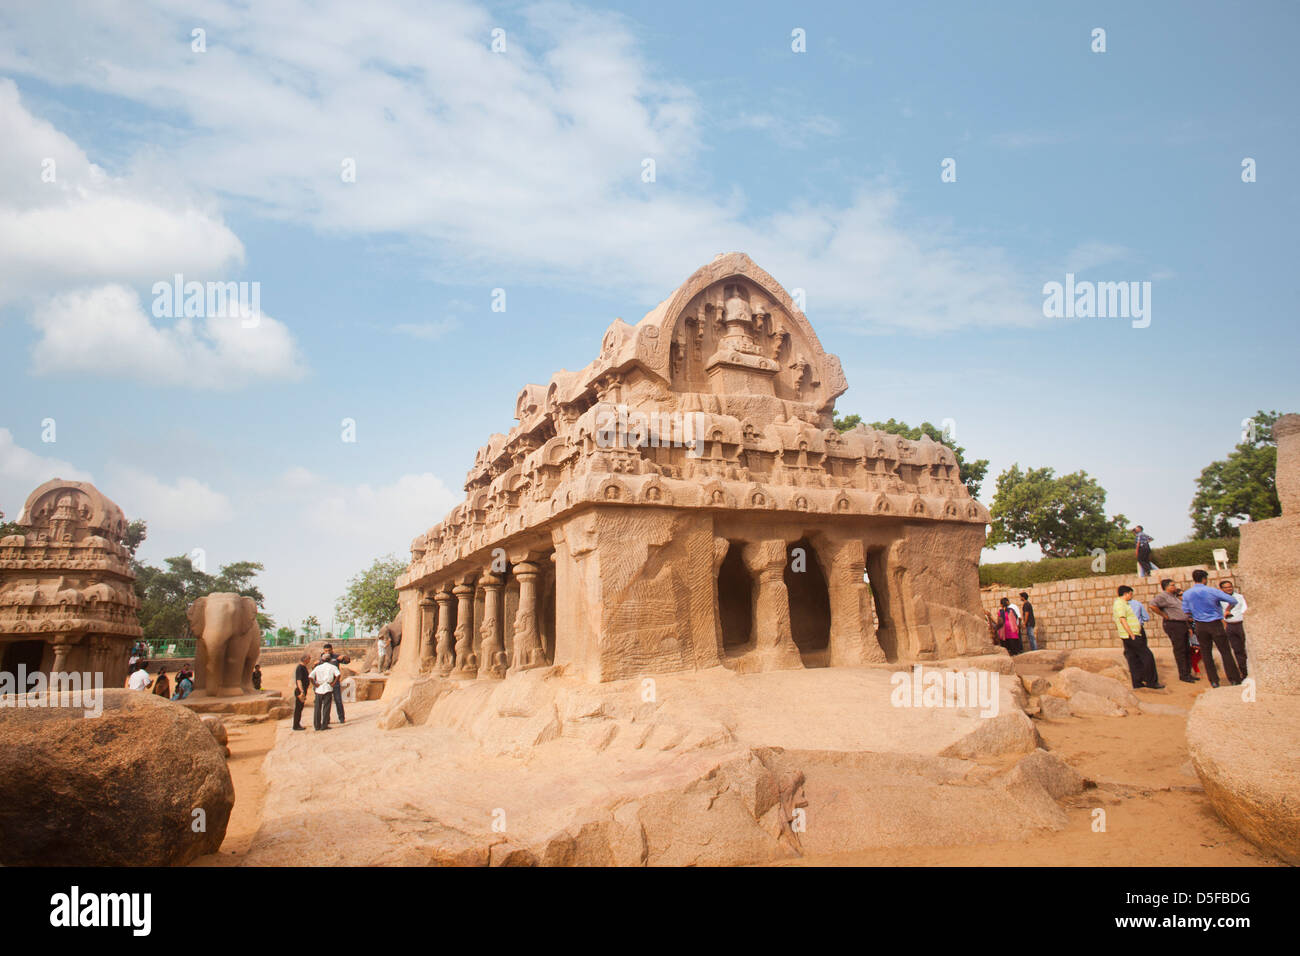 Les touristes à l'ancien temple de Pancha Rathas, Mahabalipuram, district de Kanchipuram, au Tamil Nadu, Inde Banque D'Images